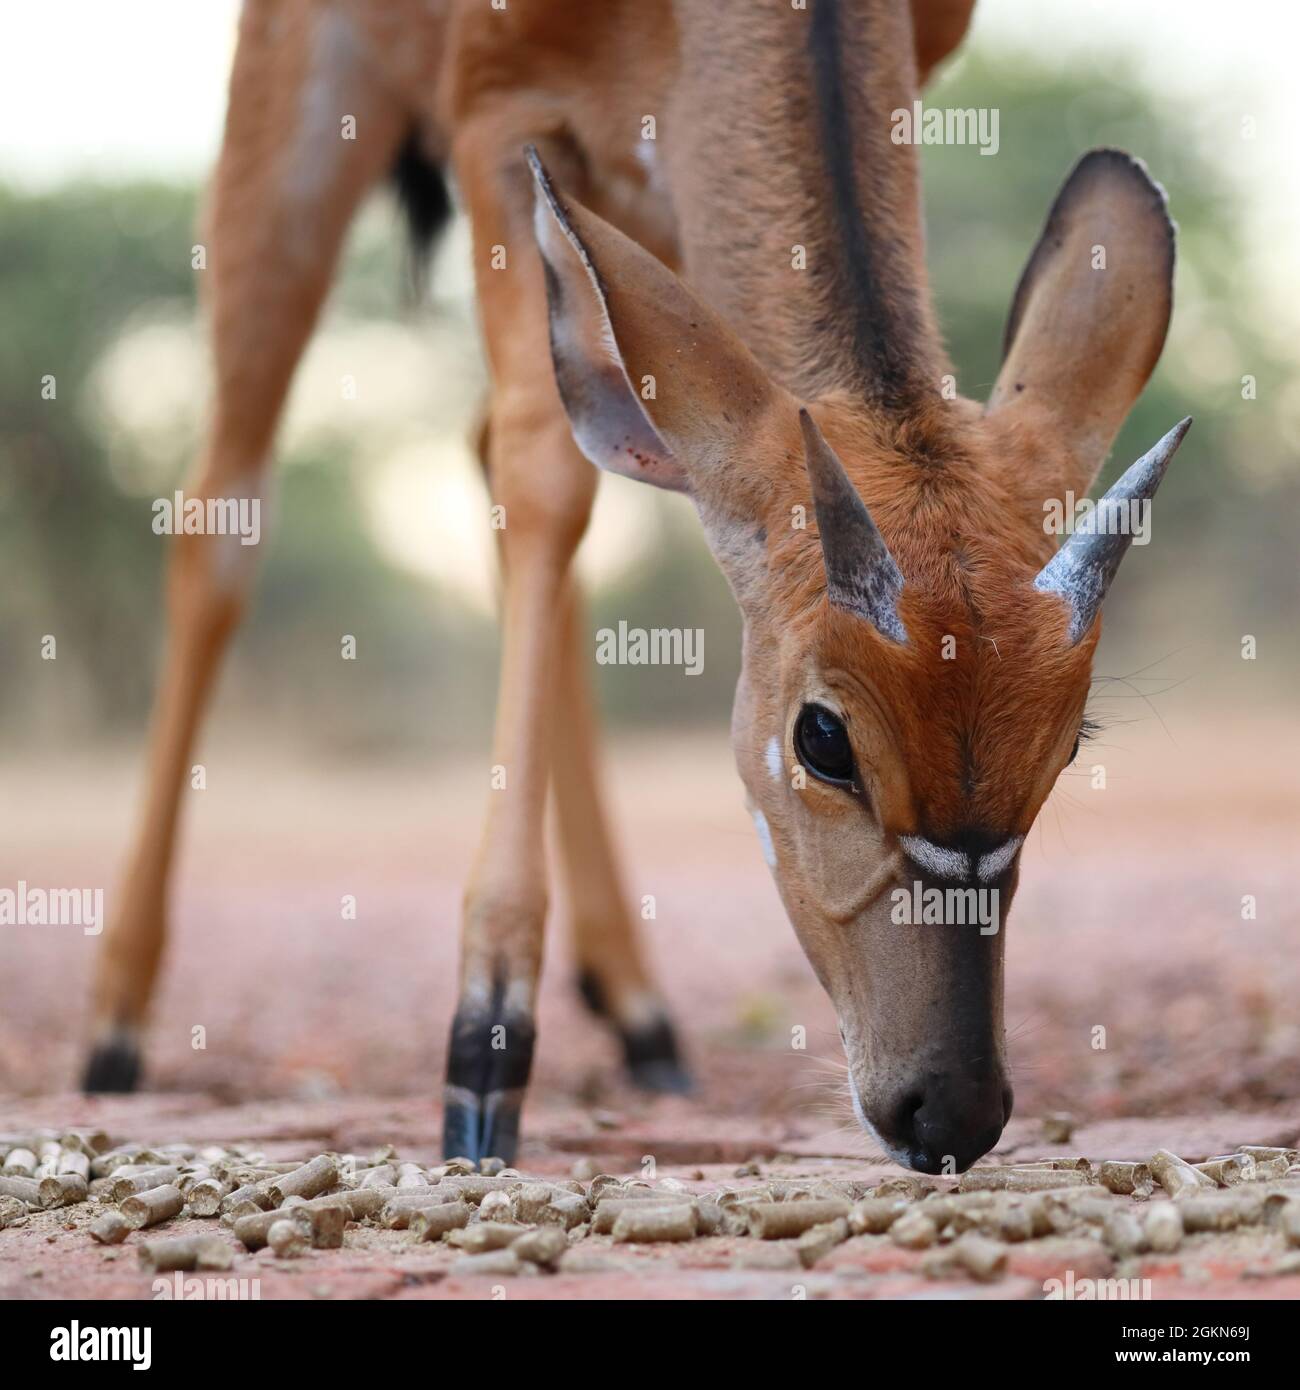 Nahaufnahme Porträt eines jungen männlichen Nyala Tragelaphus angasii-Antilopen mit kurzen Hörnern, die trockene Graspellets fressen, Südafrika Stockfoto